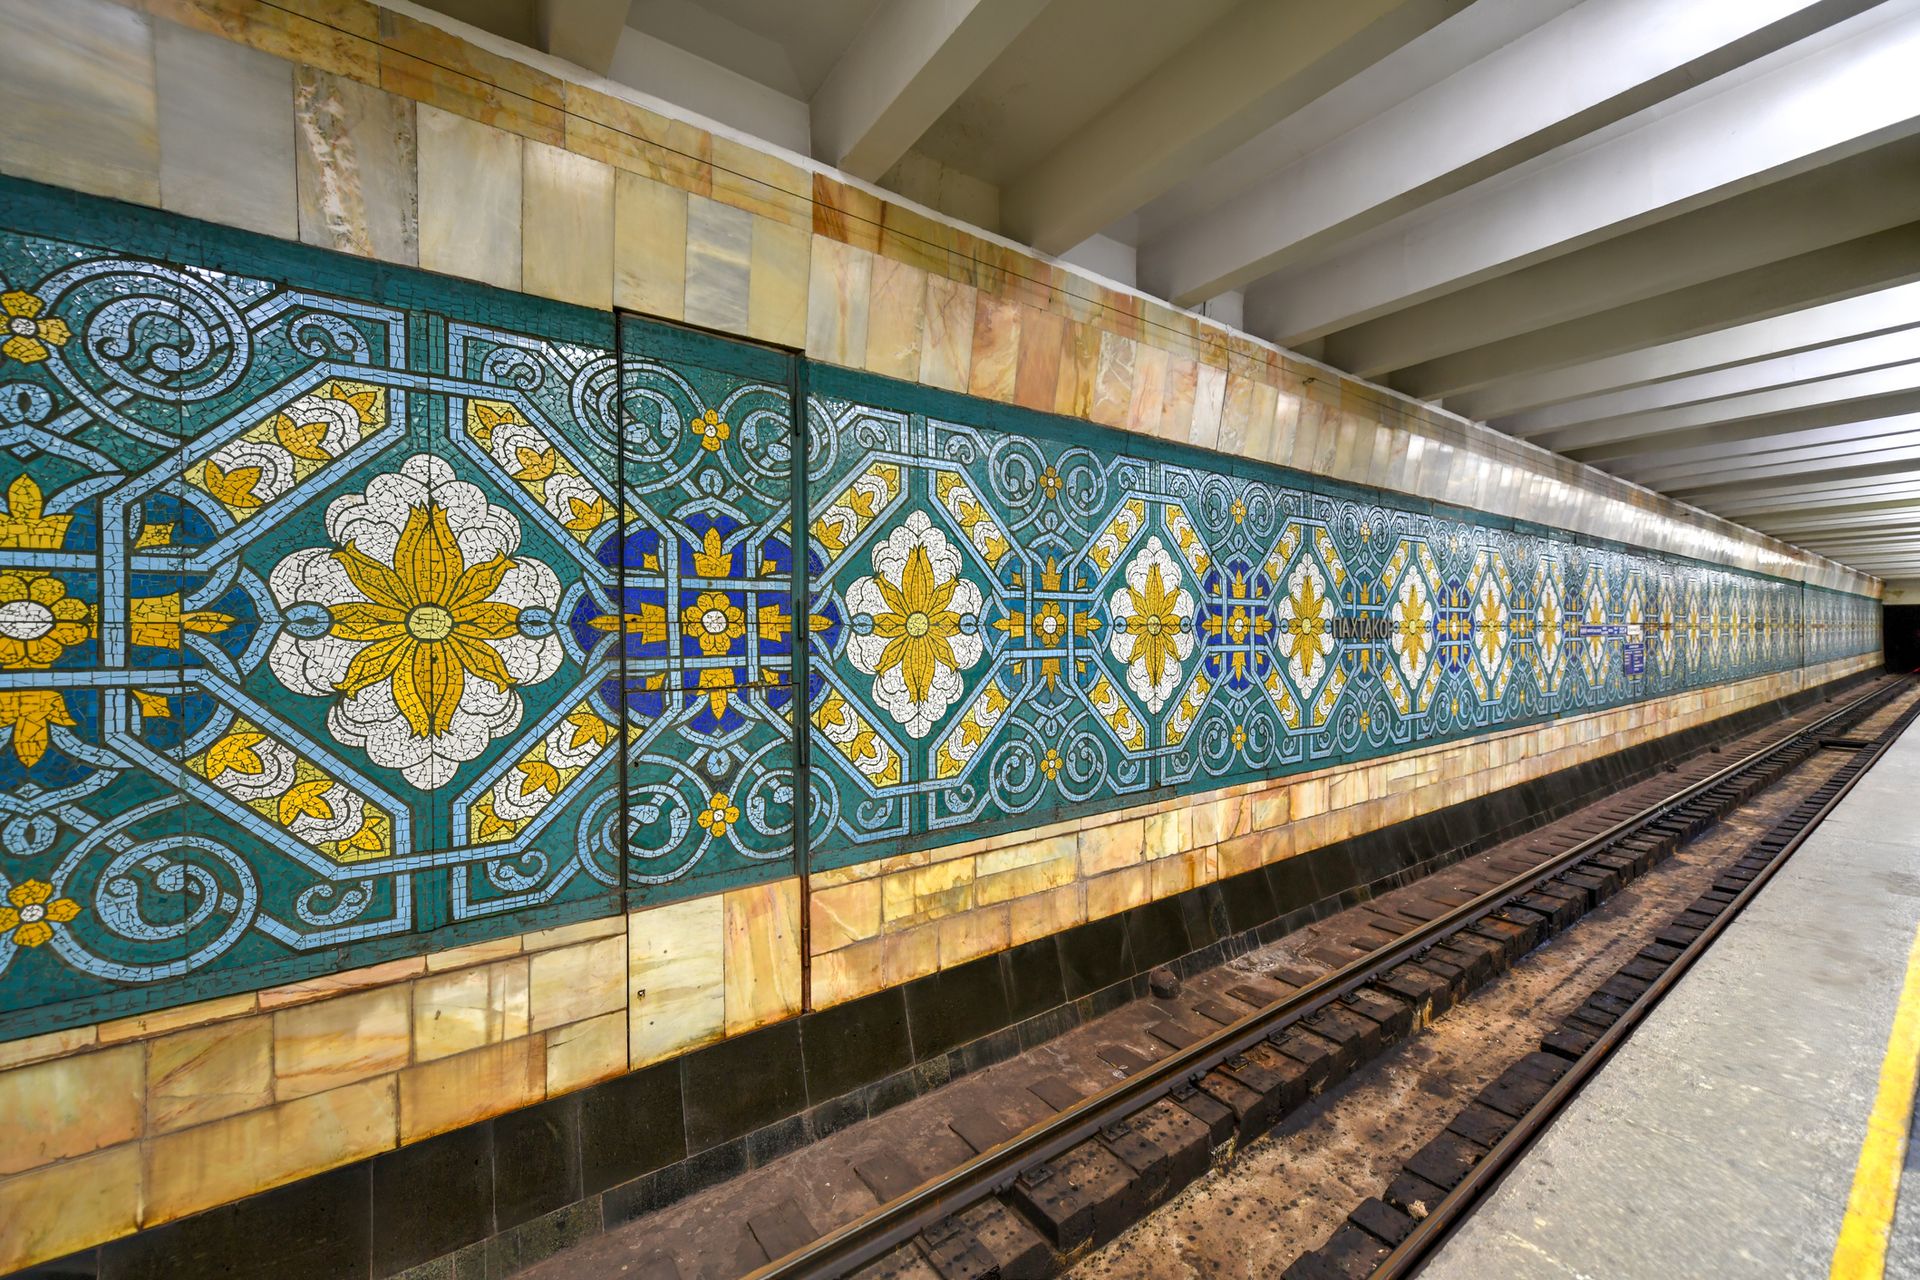 Métro de Tachkent -  Fondé en 1977, il a été construit avec une attention particulière à la beauté architecturale et artistique. Les stations du métro sont ornées de mosaïques, de peintures murales, de sculptures et de marbre, qui créent un environnement orné et élégant pour les voyageurs.